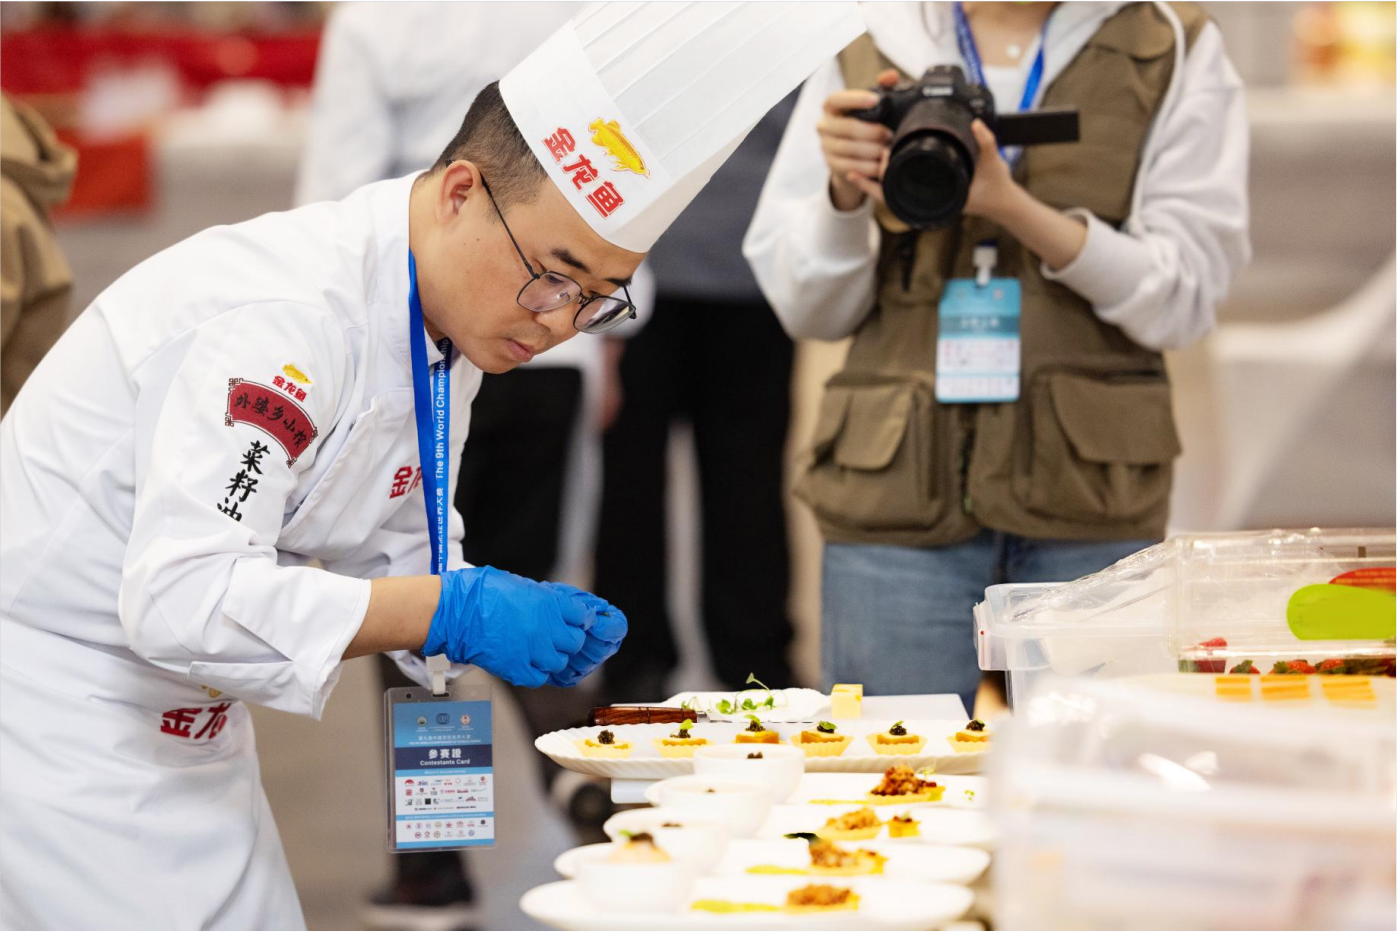 将菜品和金龙鱼产品的特点结合得淋漓尽致,通过大赛展现,弘扬中国